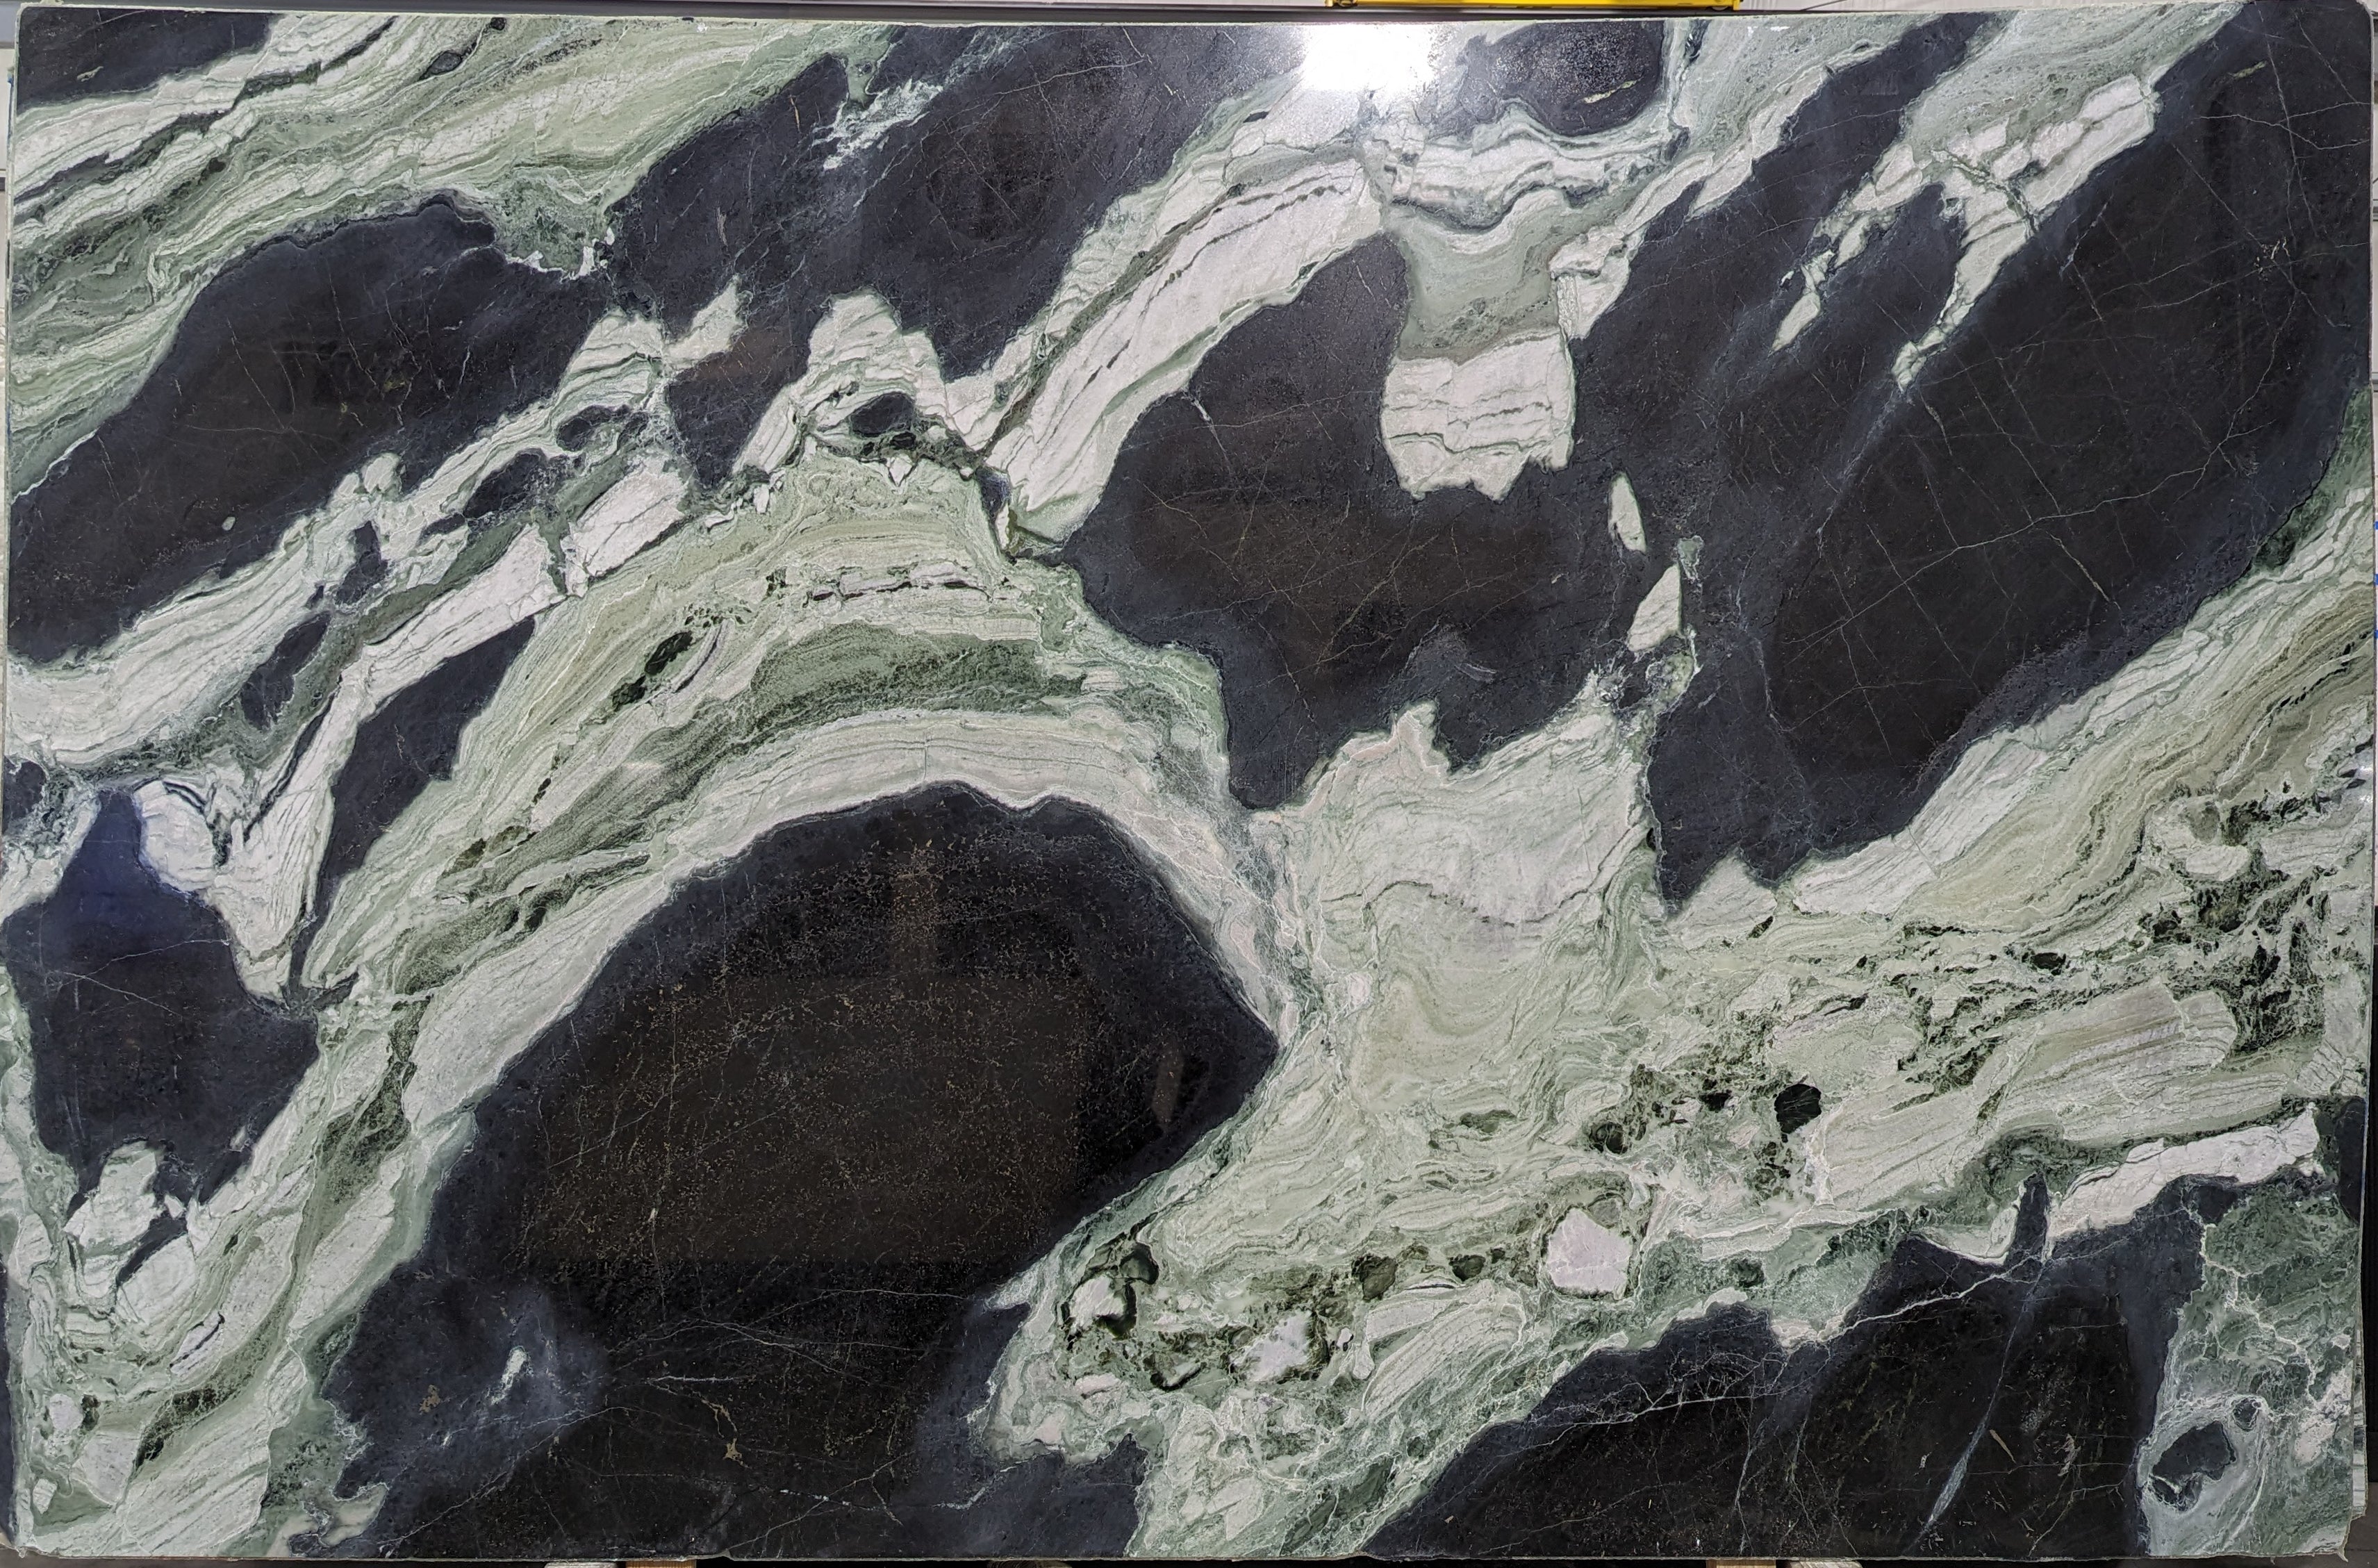  White Jade Marble Slab 3/4  Polished Stone - 38822#18 -  77x118 